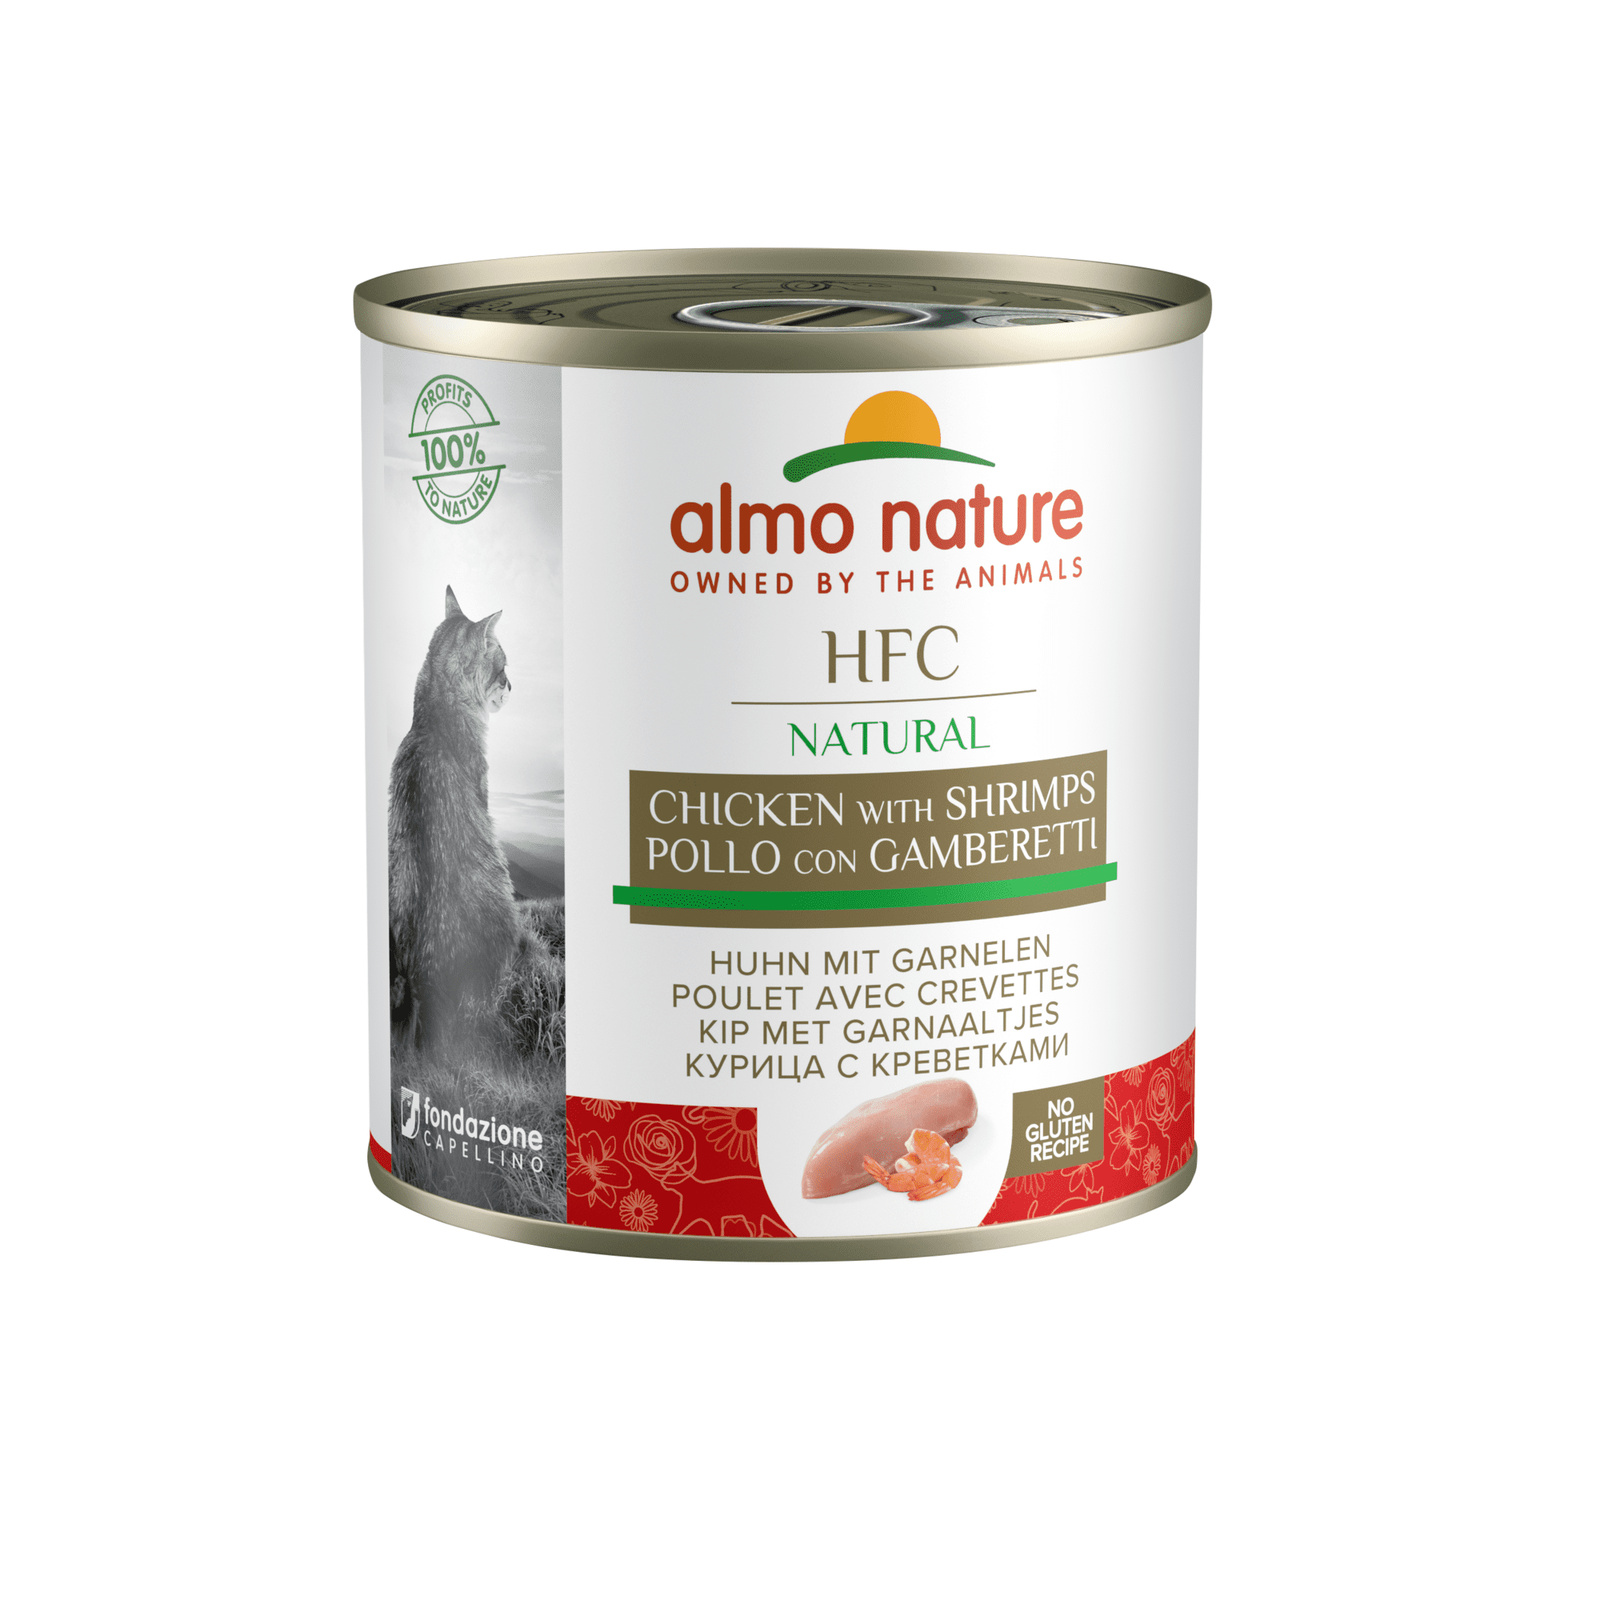 Almo Nature консервы Almo Nature консервы для кошек, с курицей и креветками (280 г) консервы для кошек almo nature legend с курицей и сыром 75% 70 г